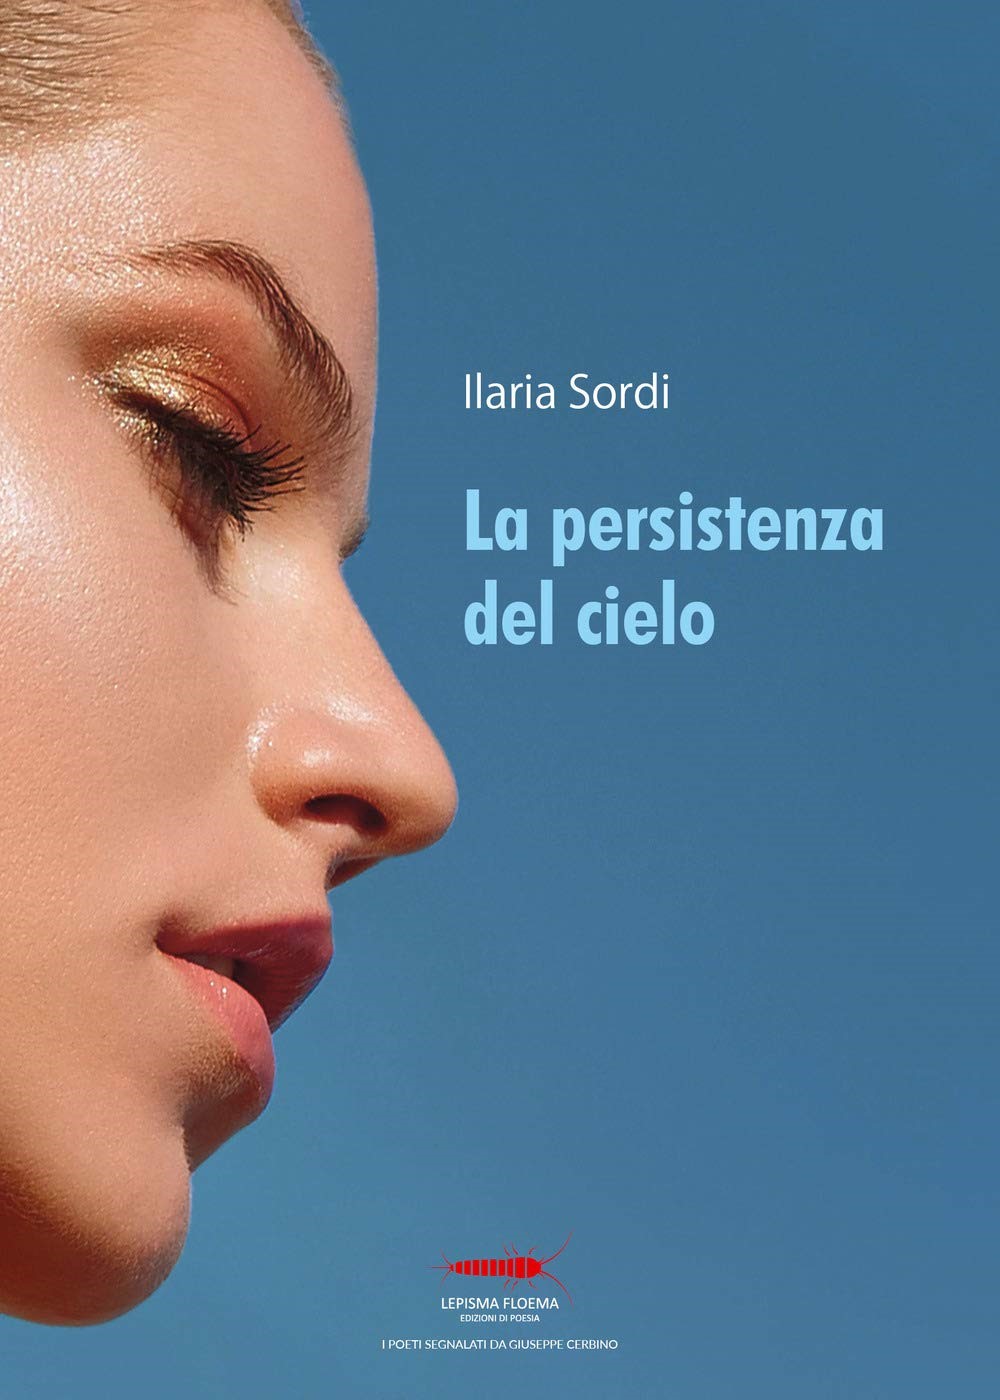 Ilaria Sordi - La persistenza del cielo